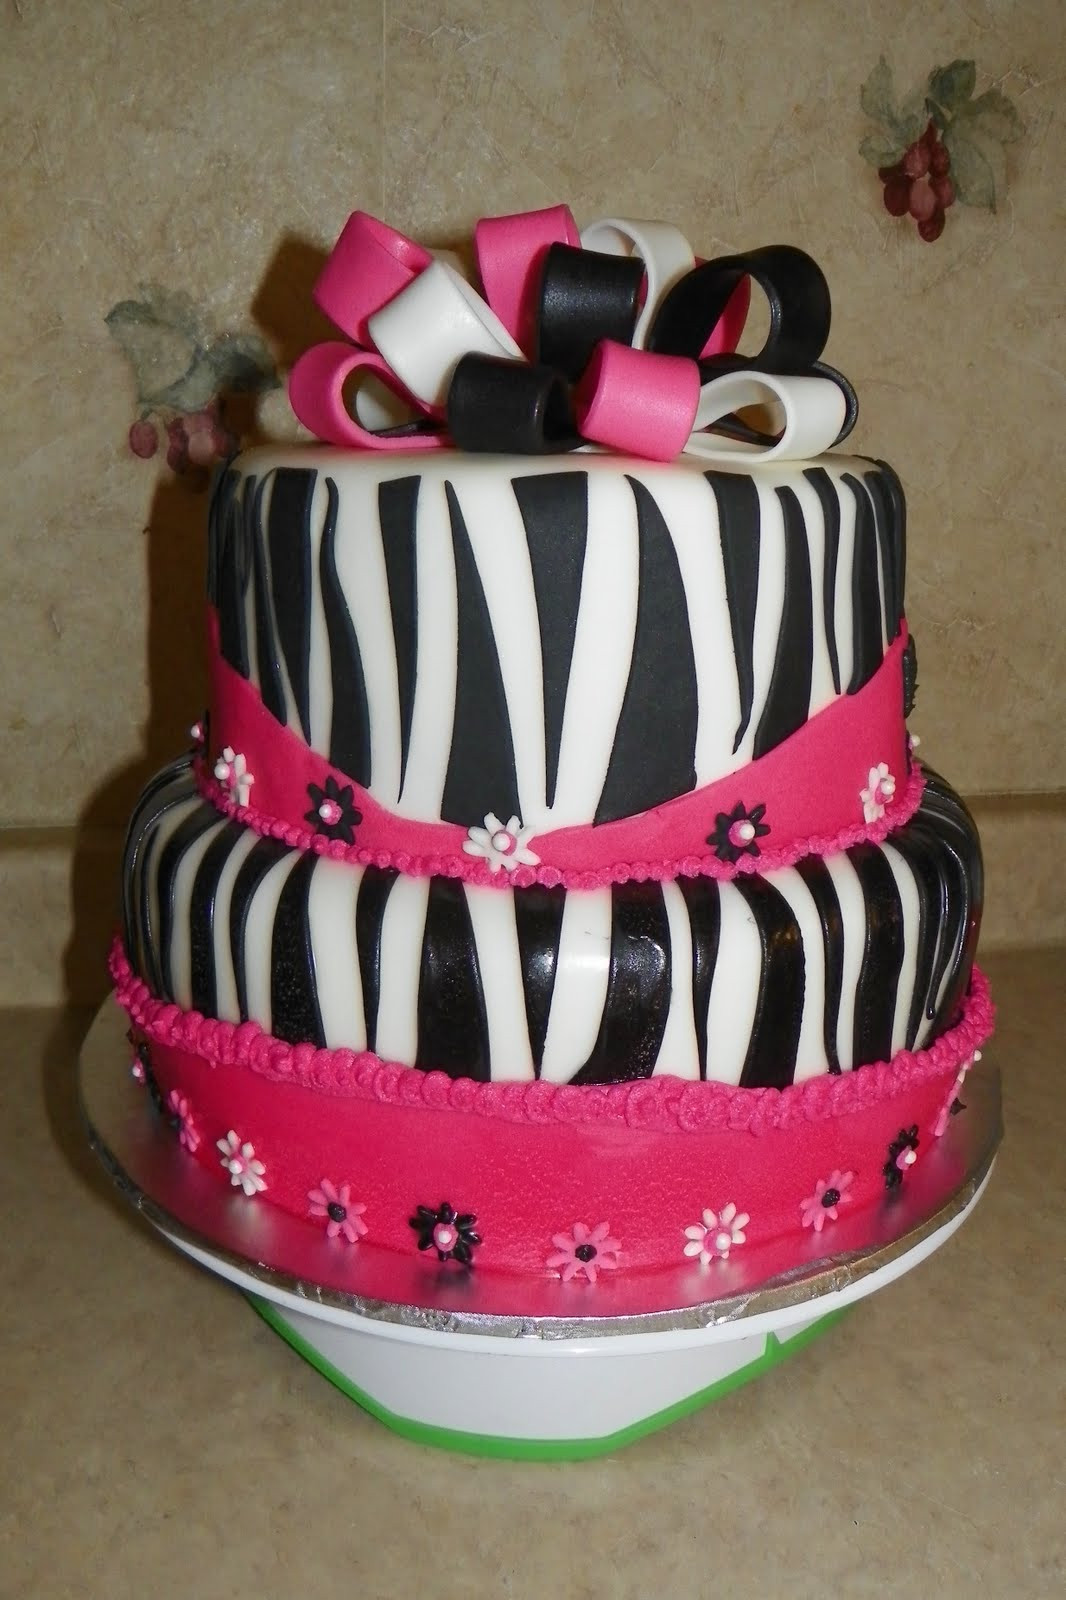 Birthday Cakes For Teens
 MAV Cakes Girly Birthday Cakes Teens